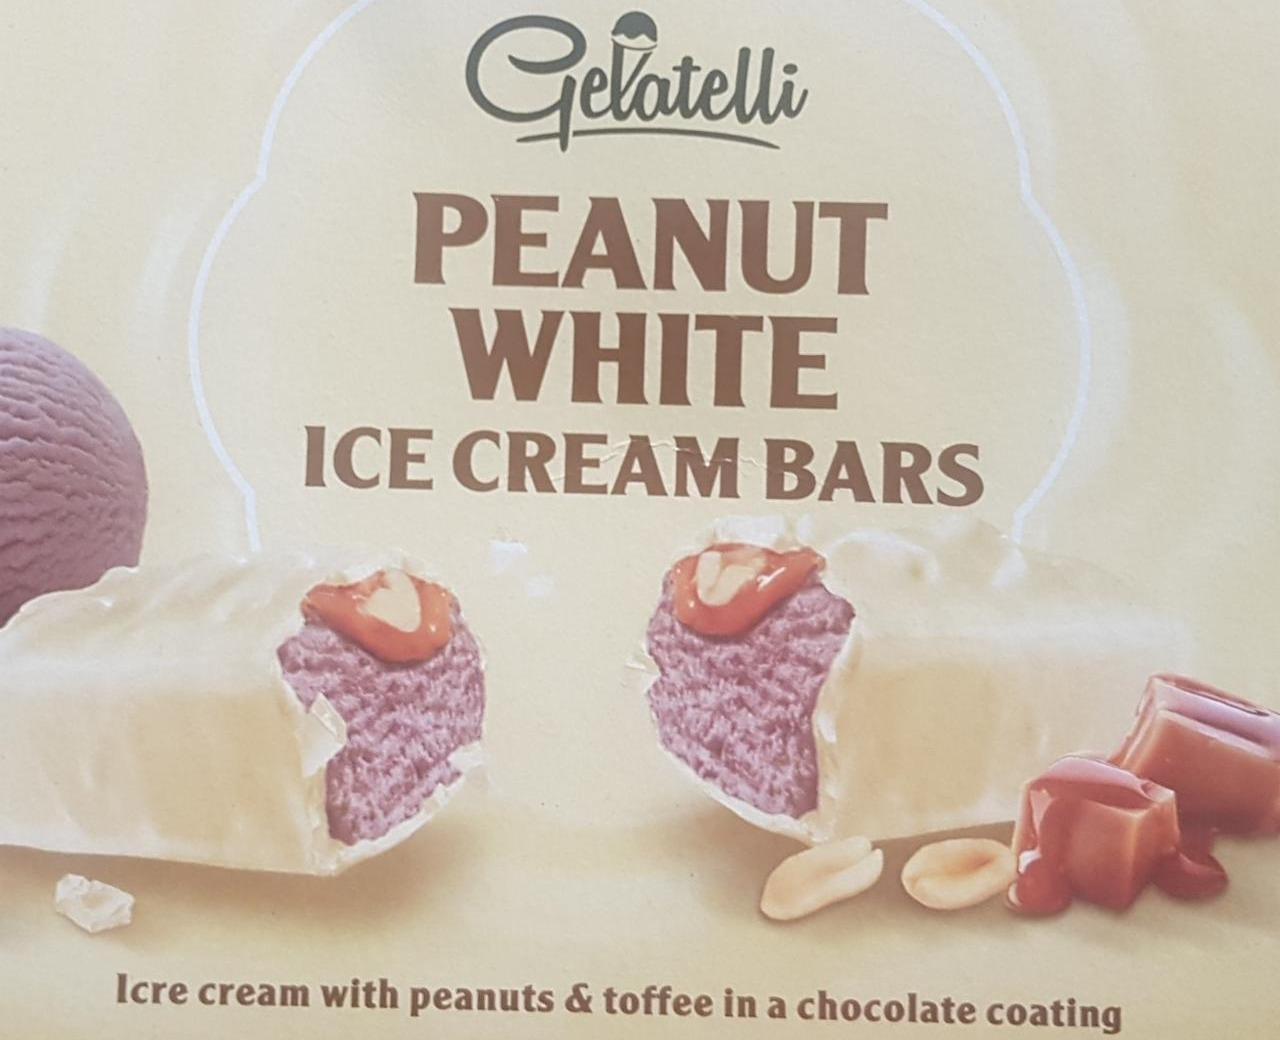 Fotografie - Peanut White Ice Cream Bars Gelatelli